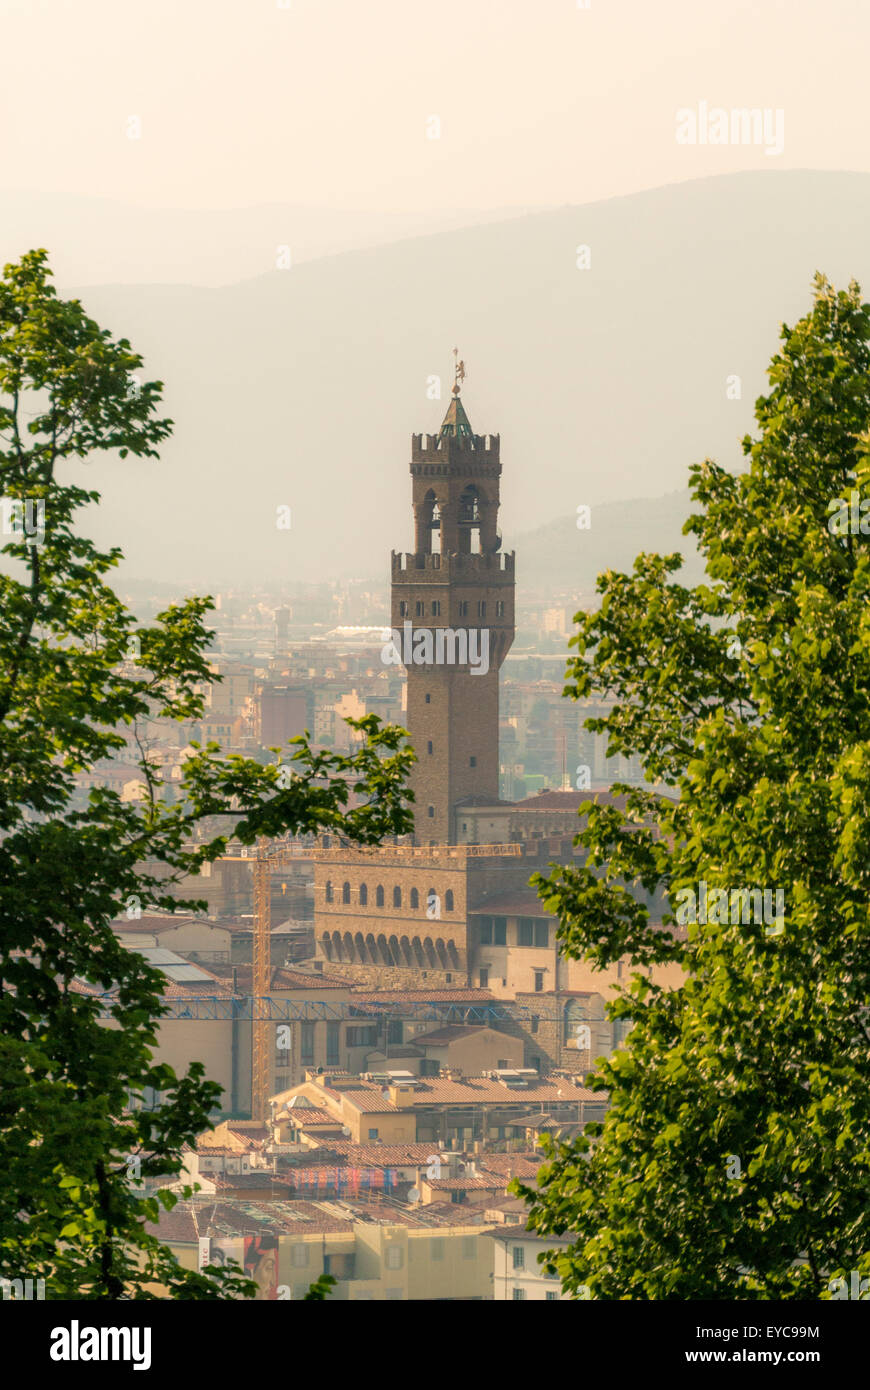 Palazzo Vecchio overlooking  Piazza della Signoria. Florence, Italy. Stock Photo